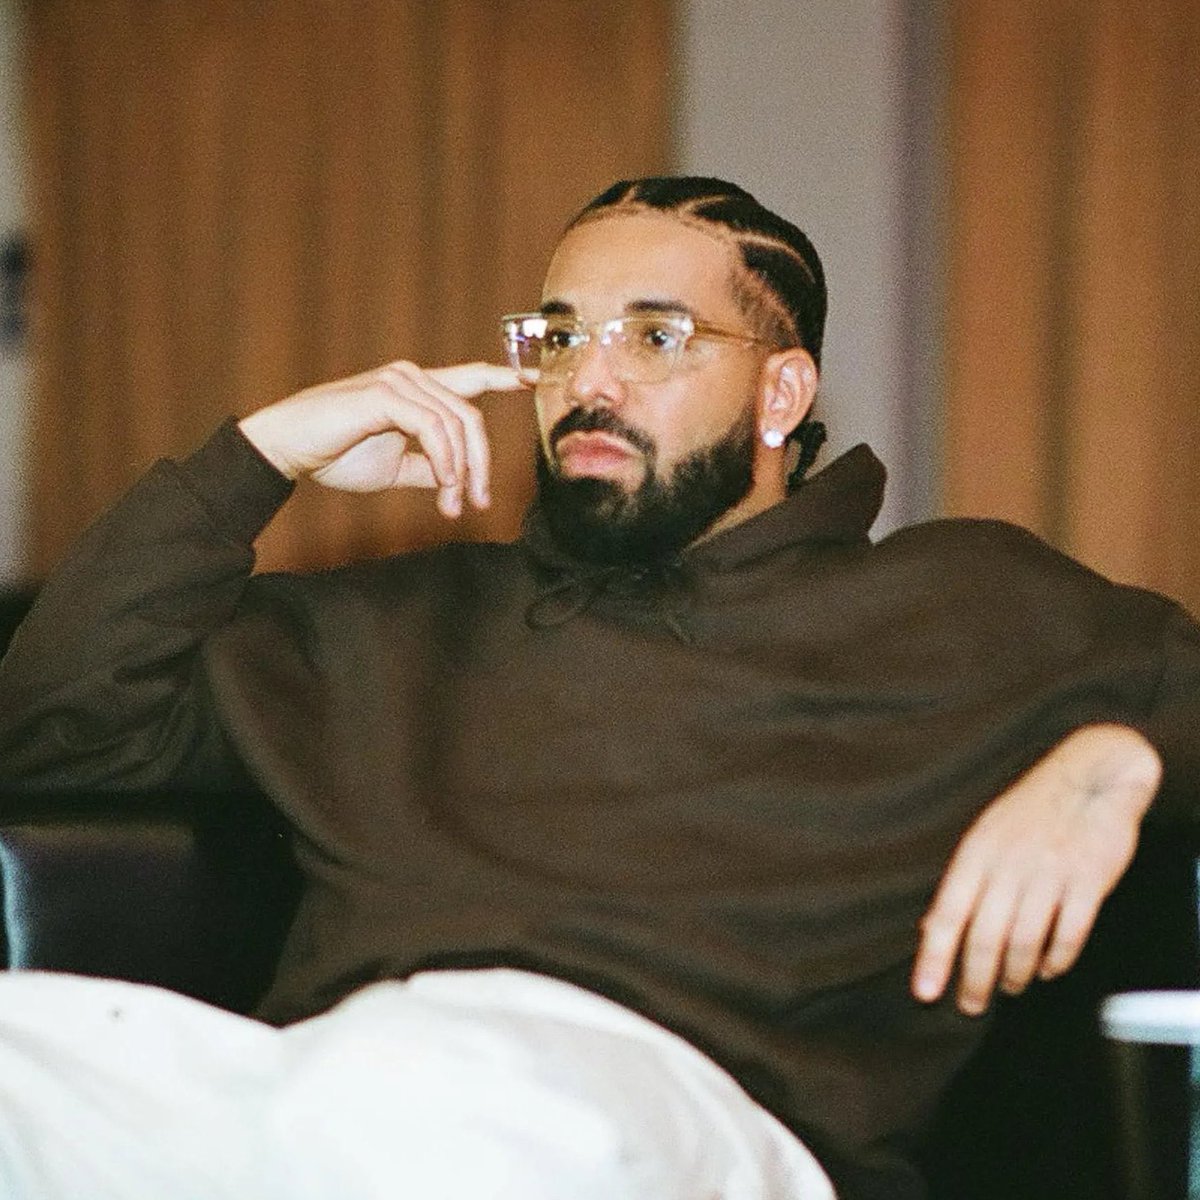 Akademiks hinting at a new Drake song coming 👀